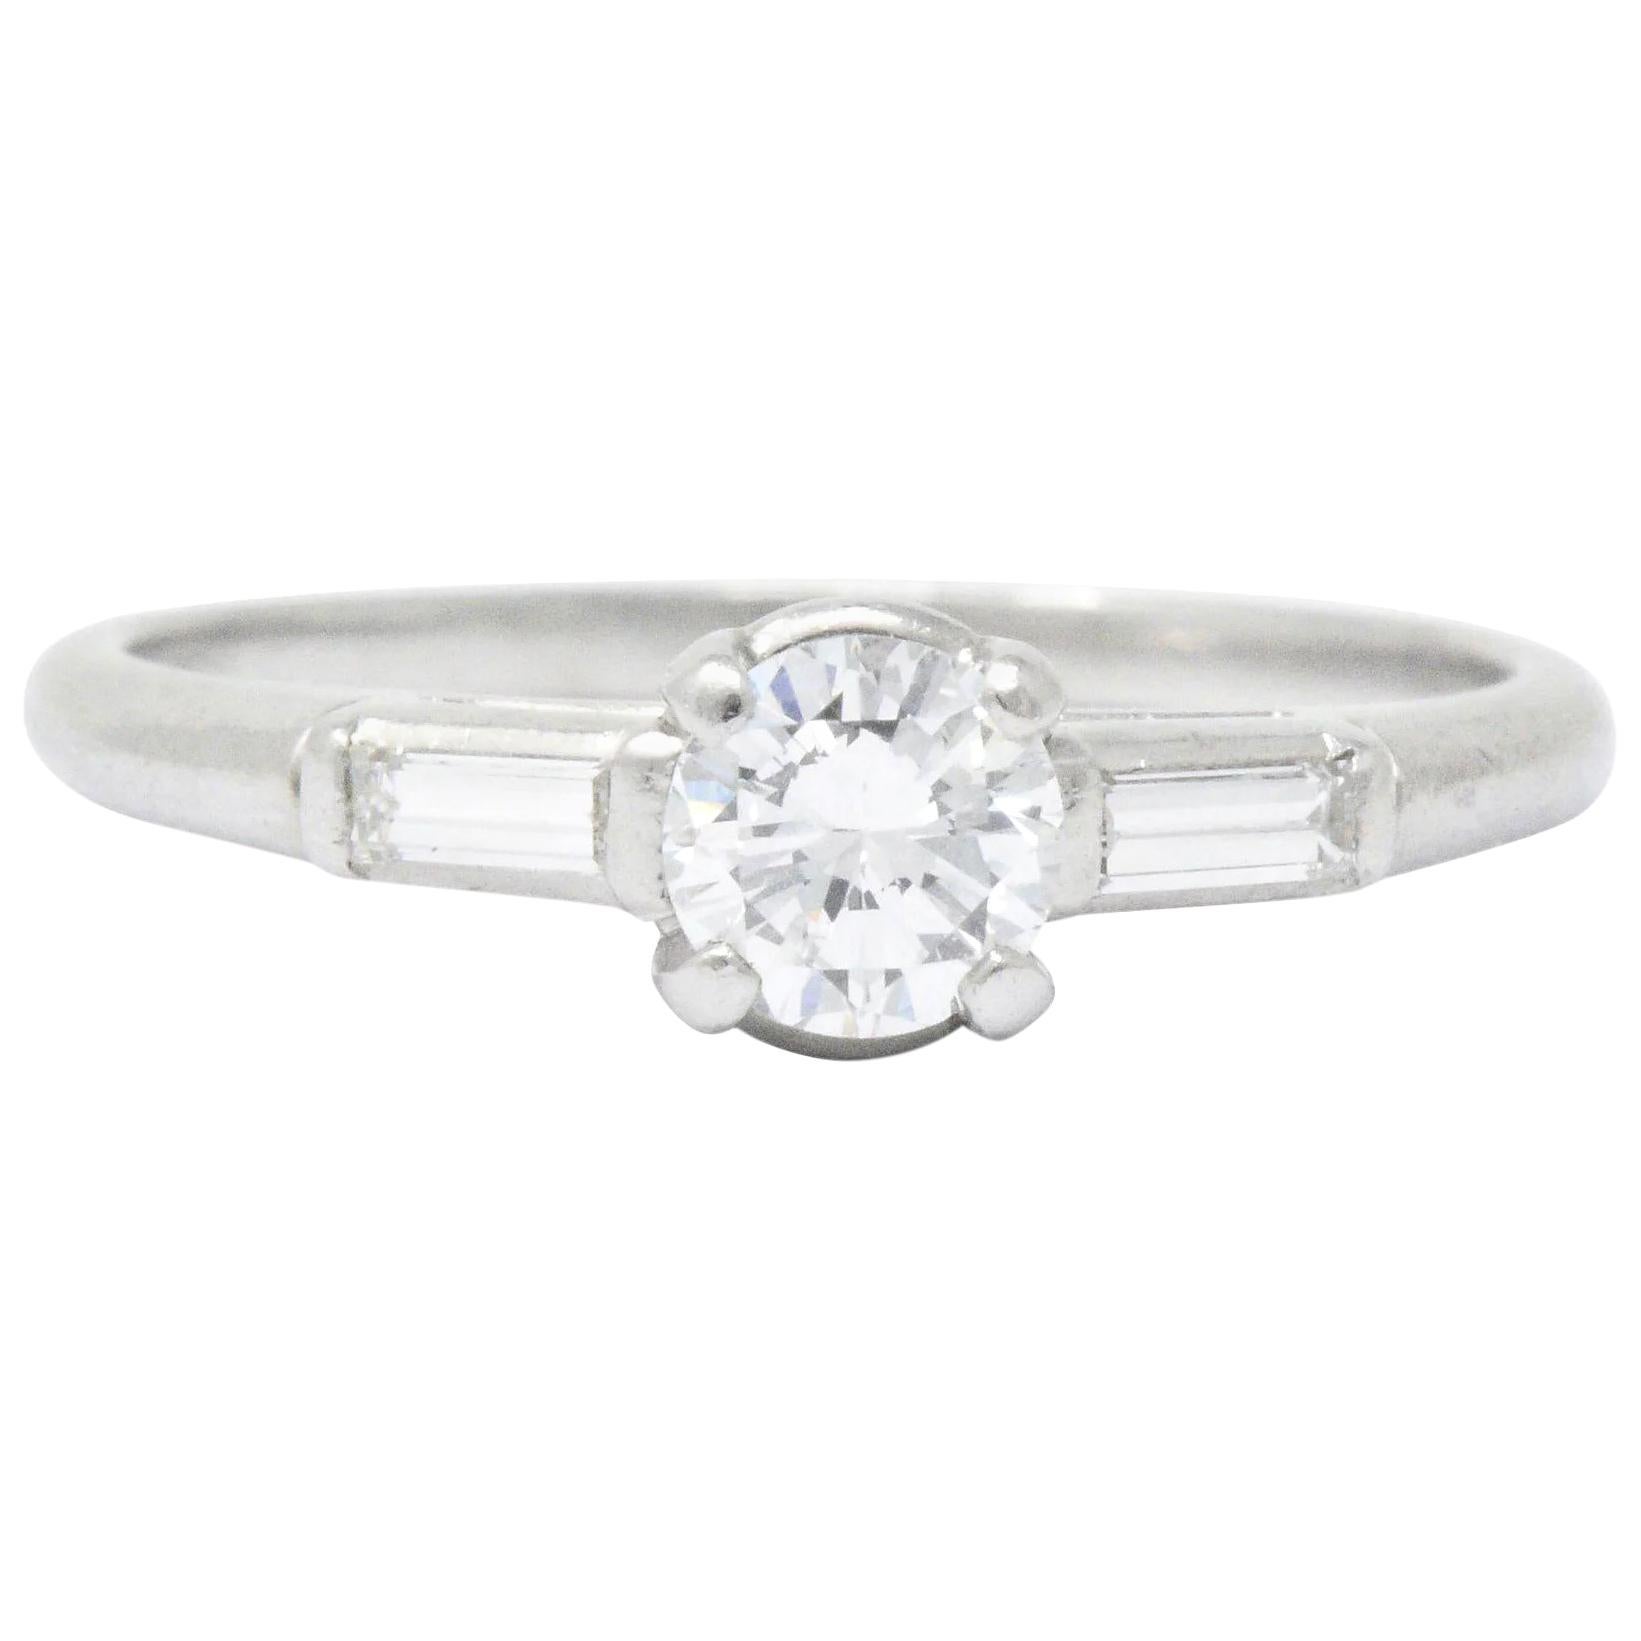 Retro 0.65 Carat Diamond Platinum Three Stone Engagement Ring